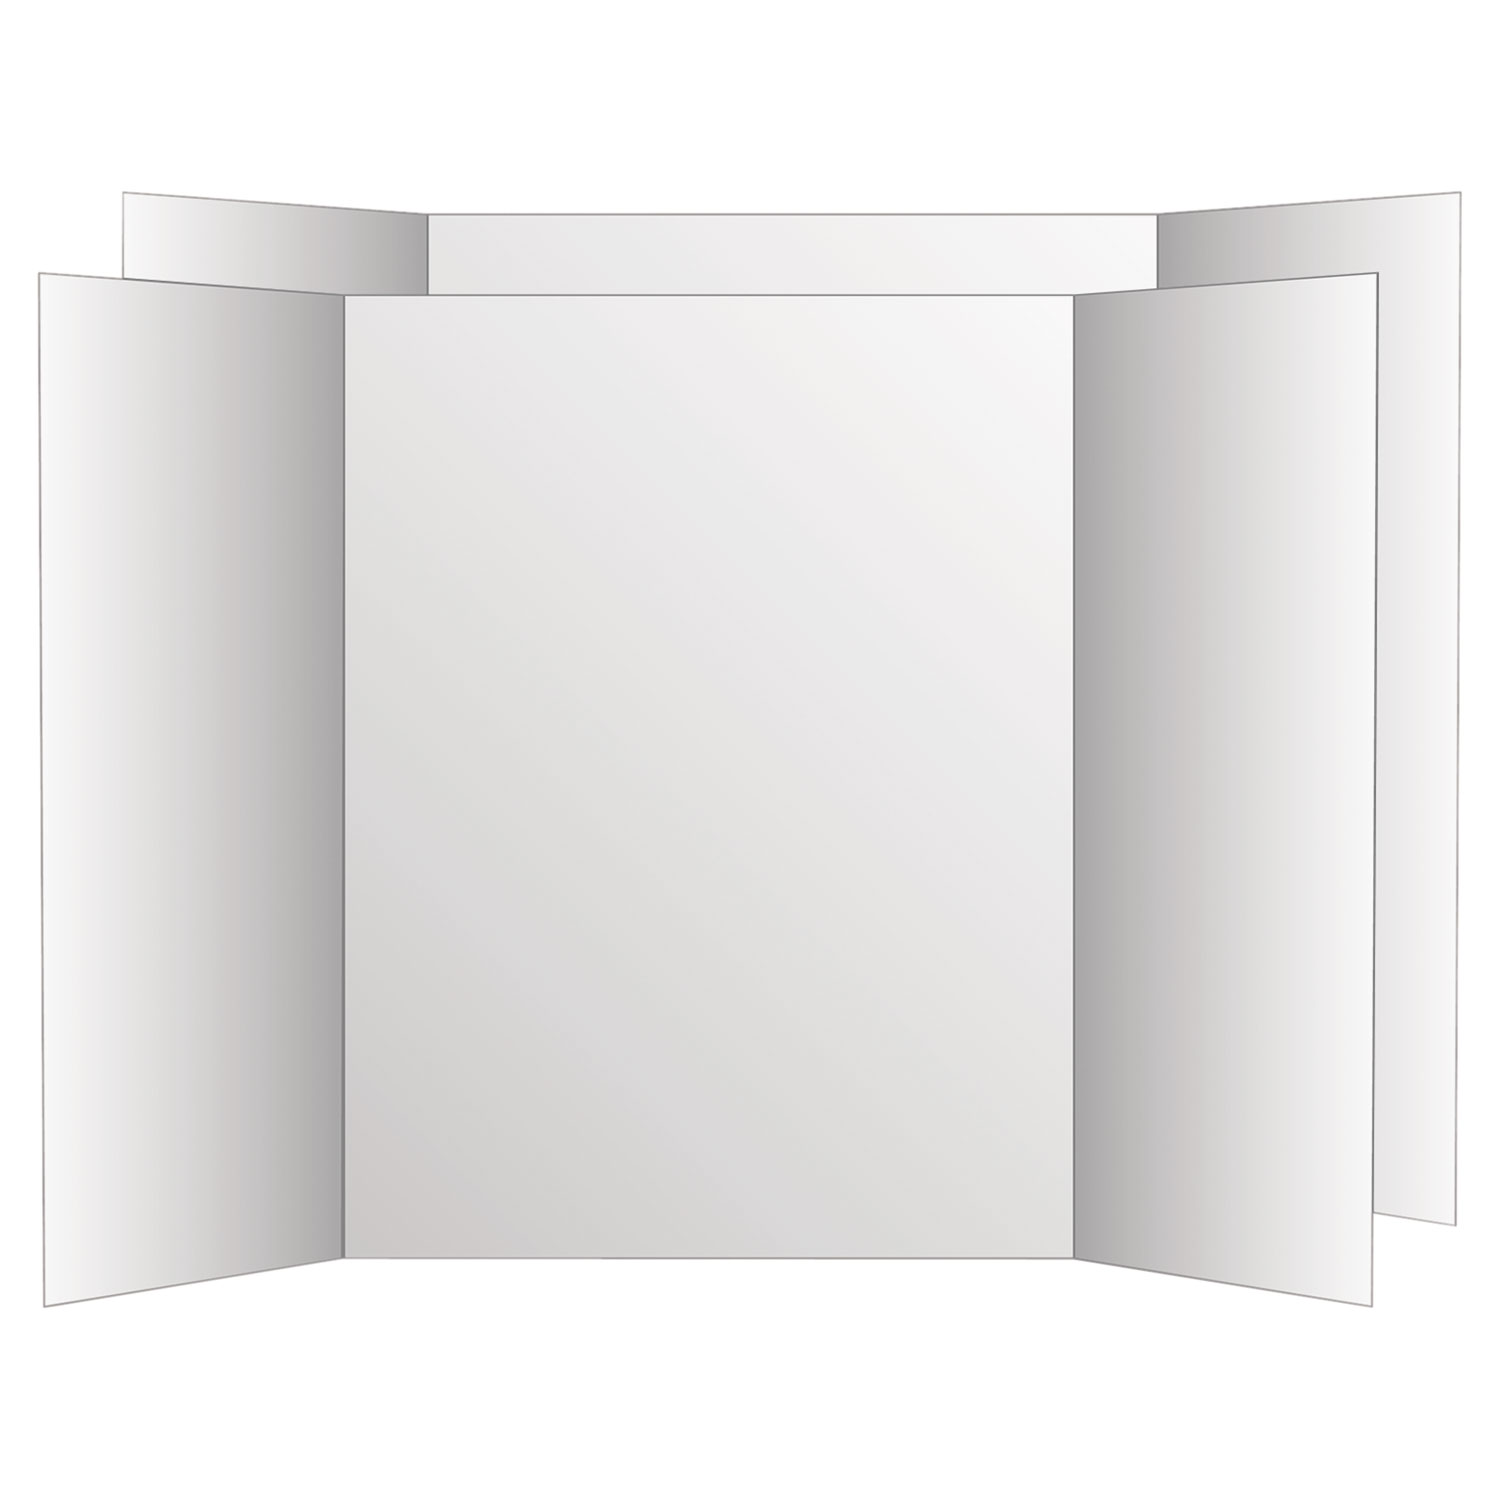  Eco Brites 26790 Two Cool Tri-Fold Poster Board, 36 x 48, White/White, 6/Carton (GEO26790) 